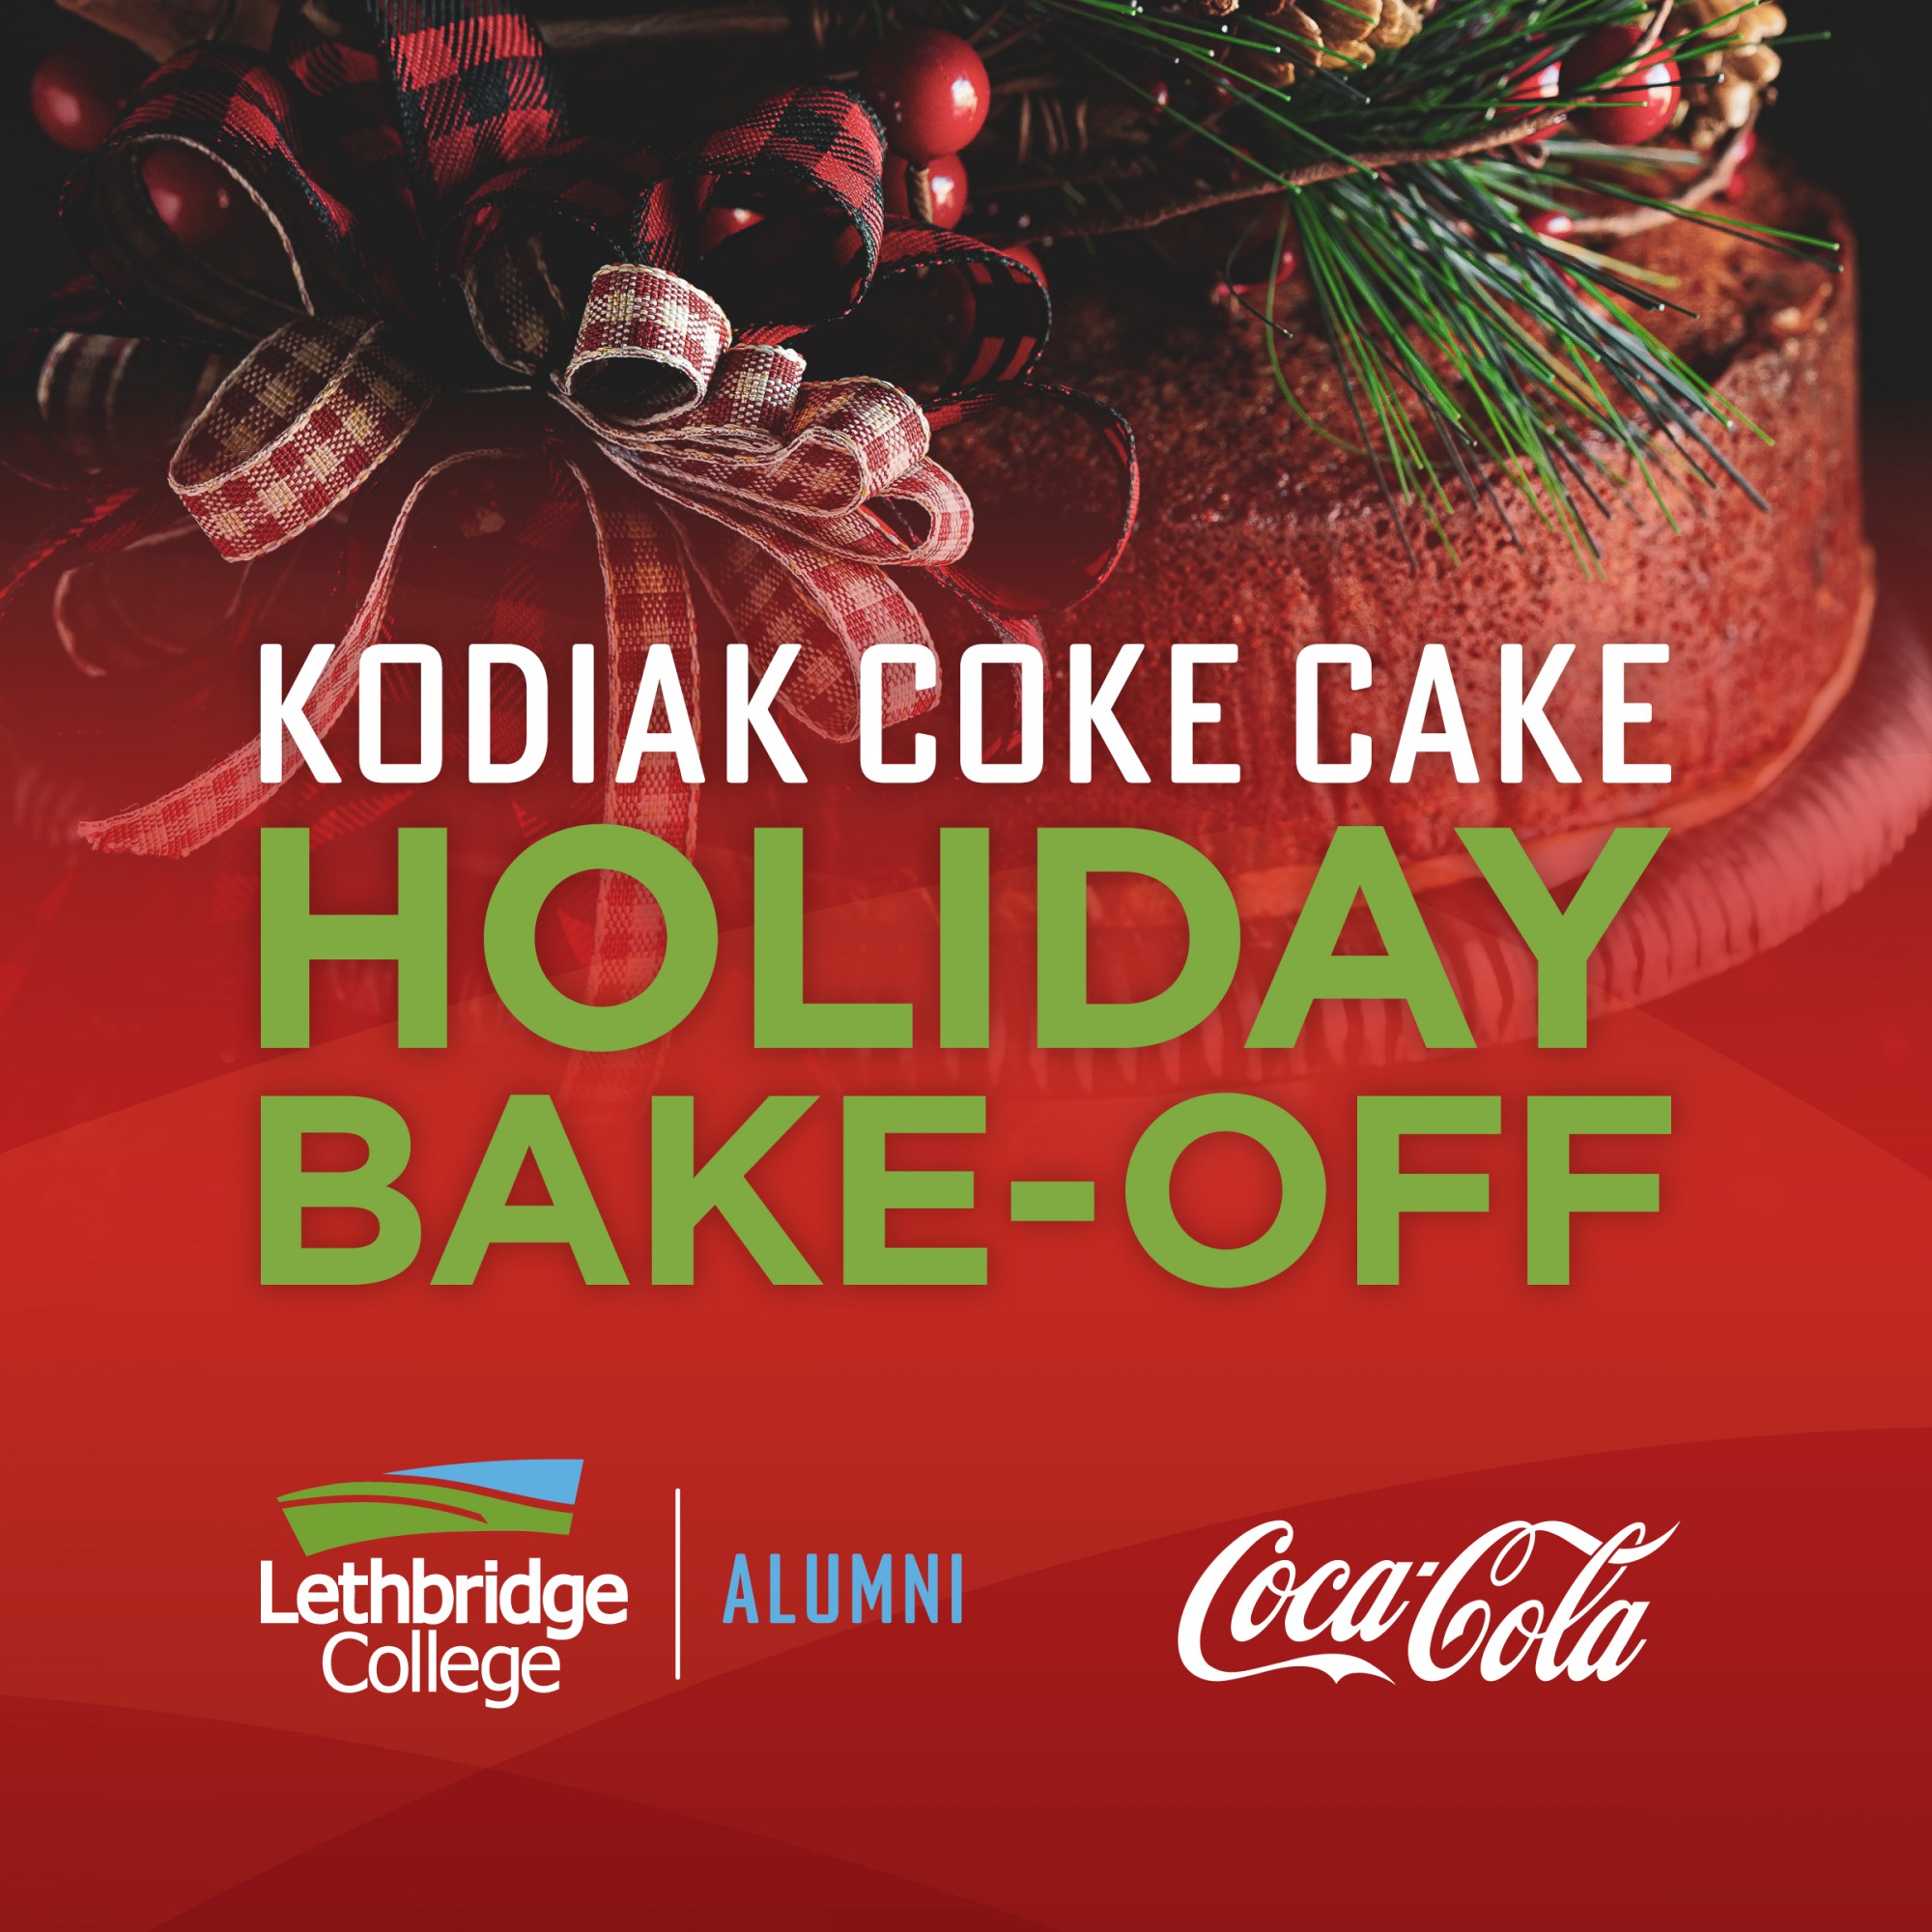 Poster for Kodiak Coke Cake Holiday Bake-off